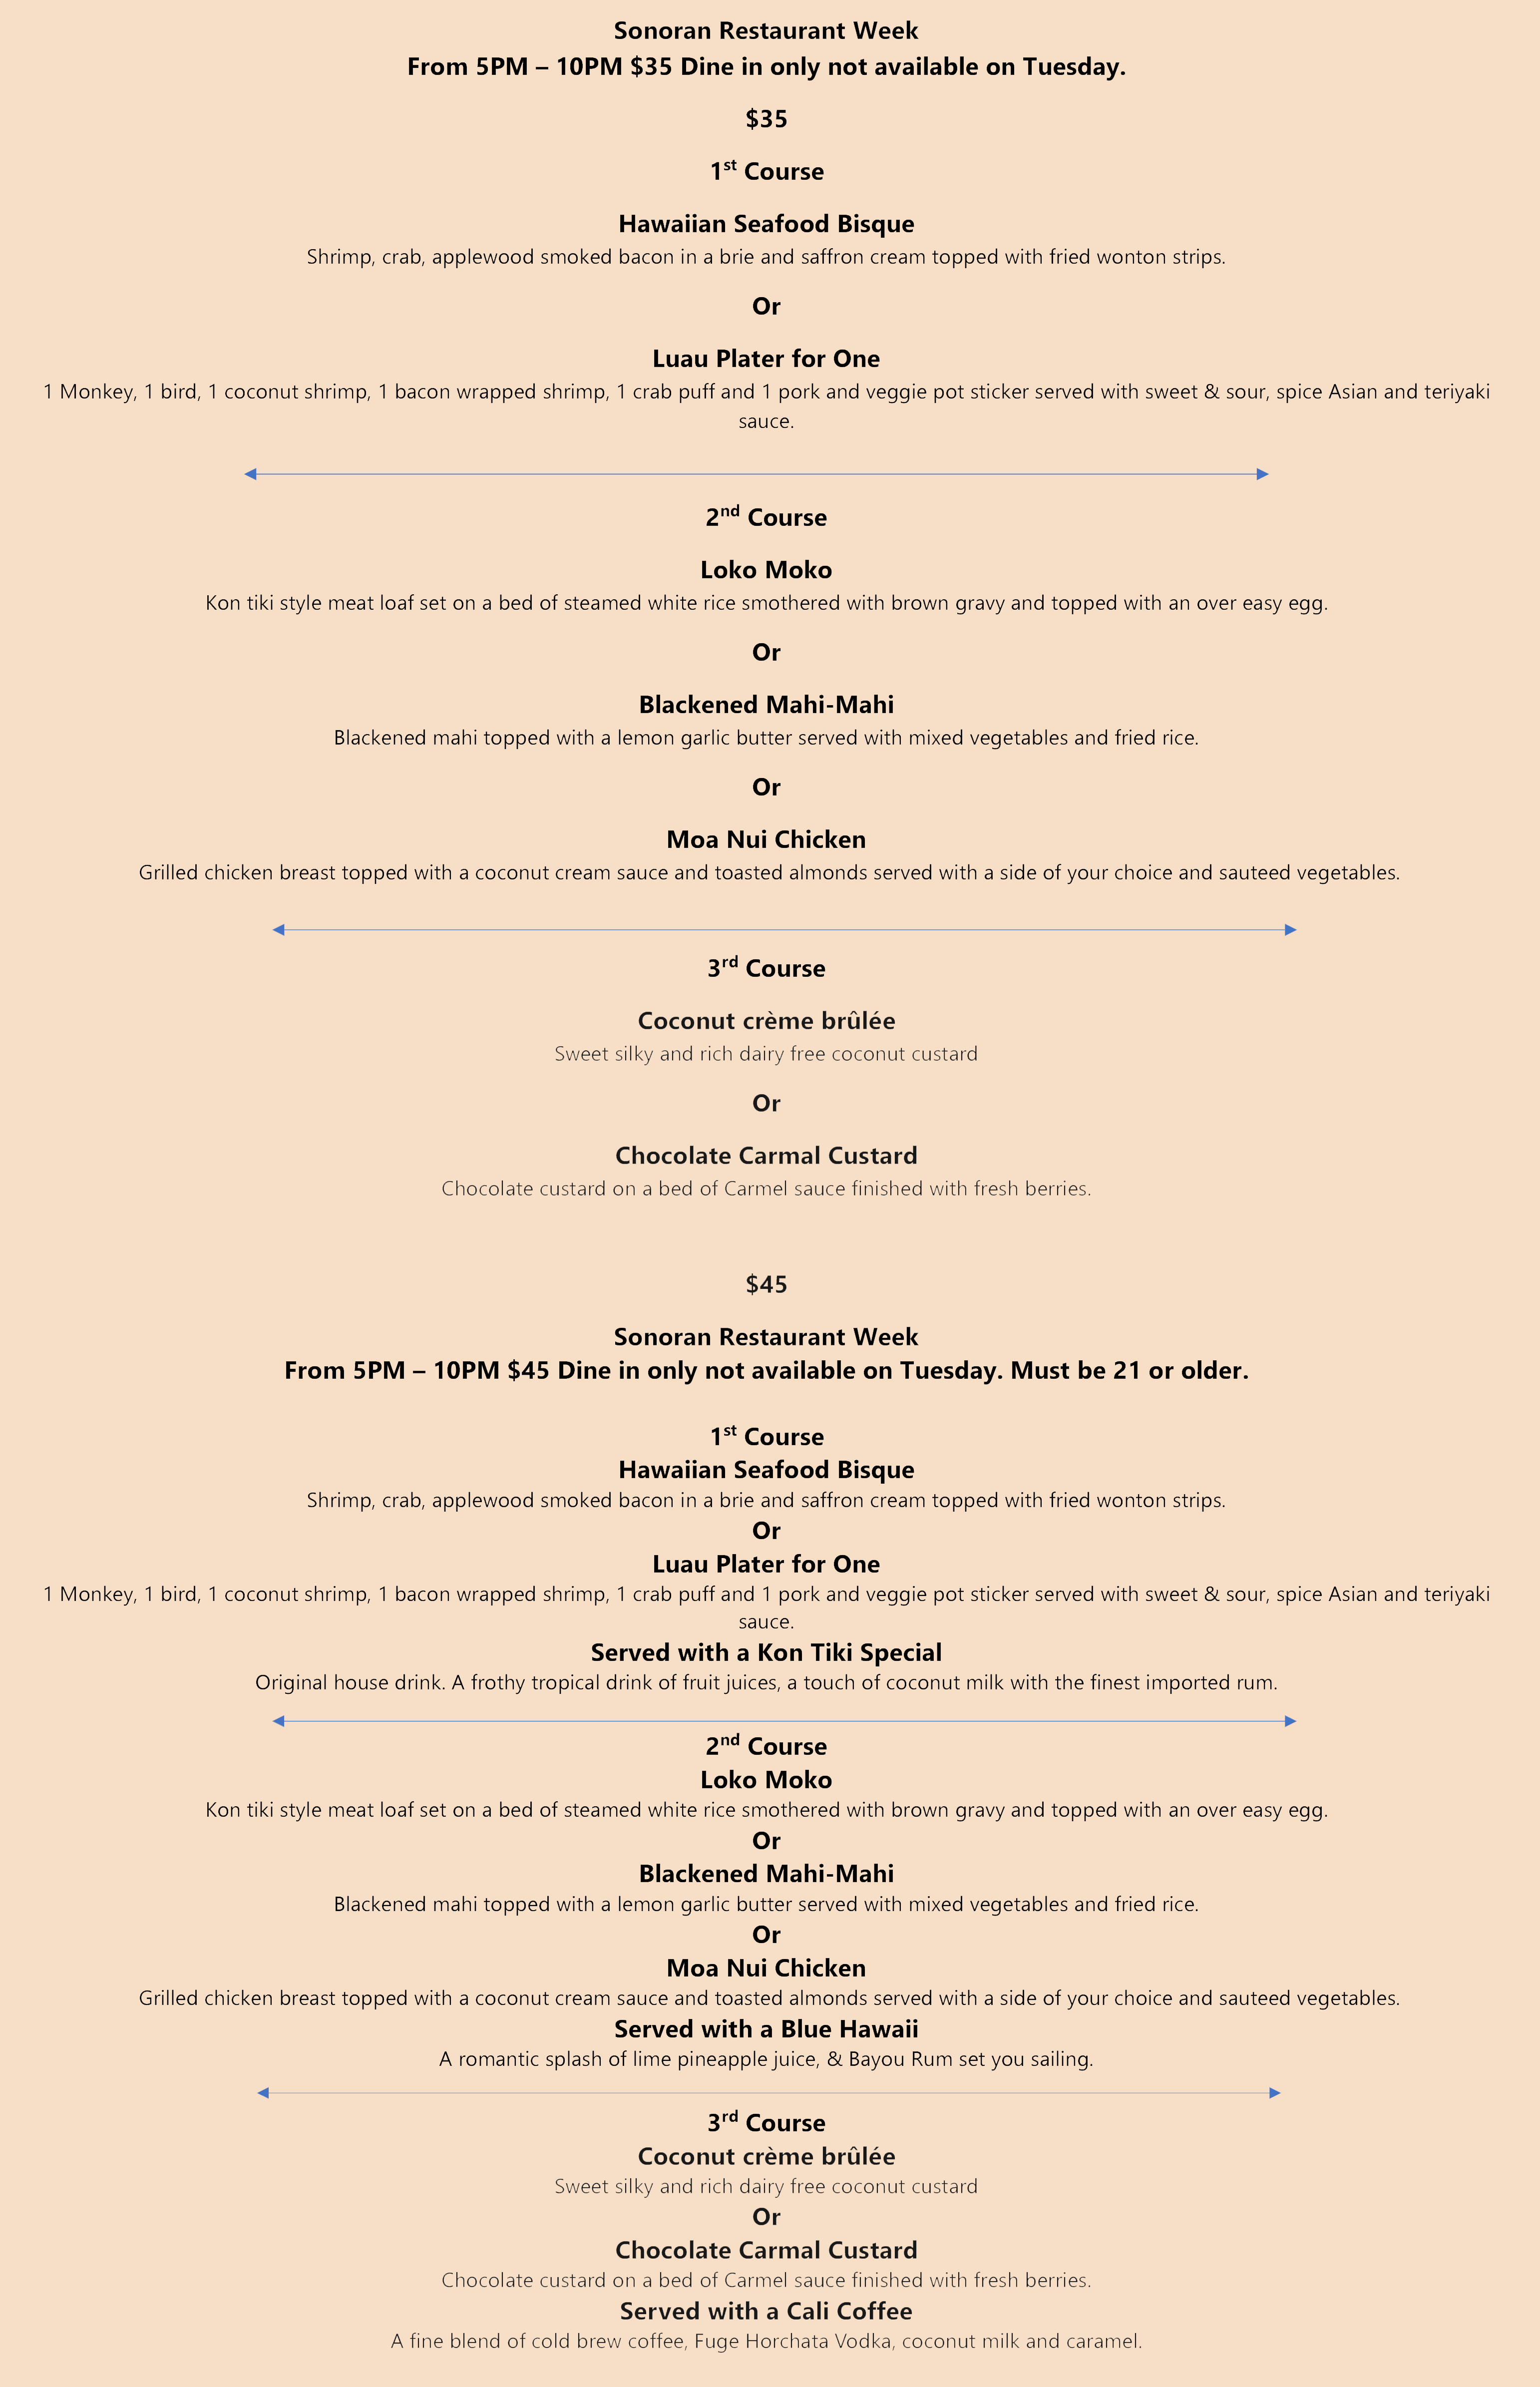 Kon Tiki's SRW menu